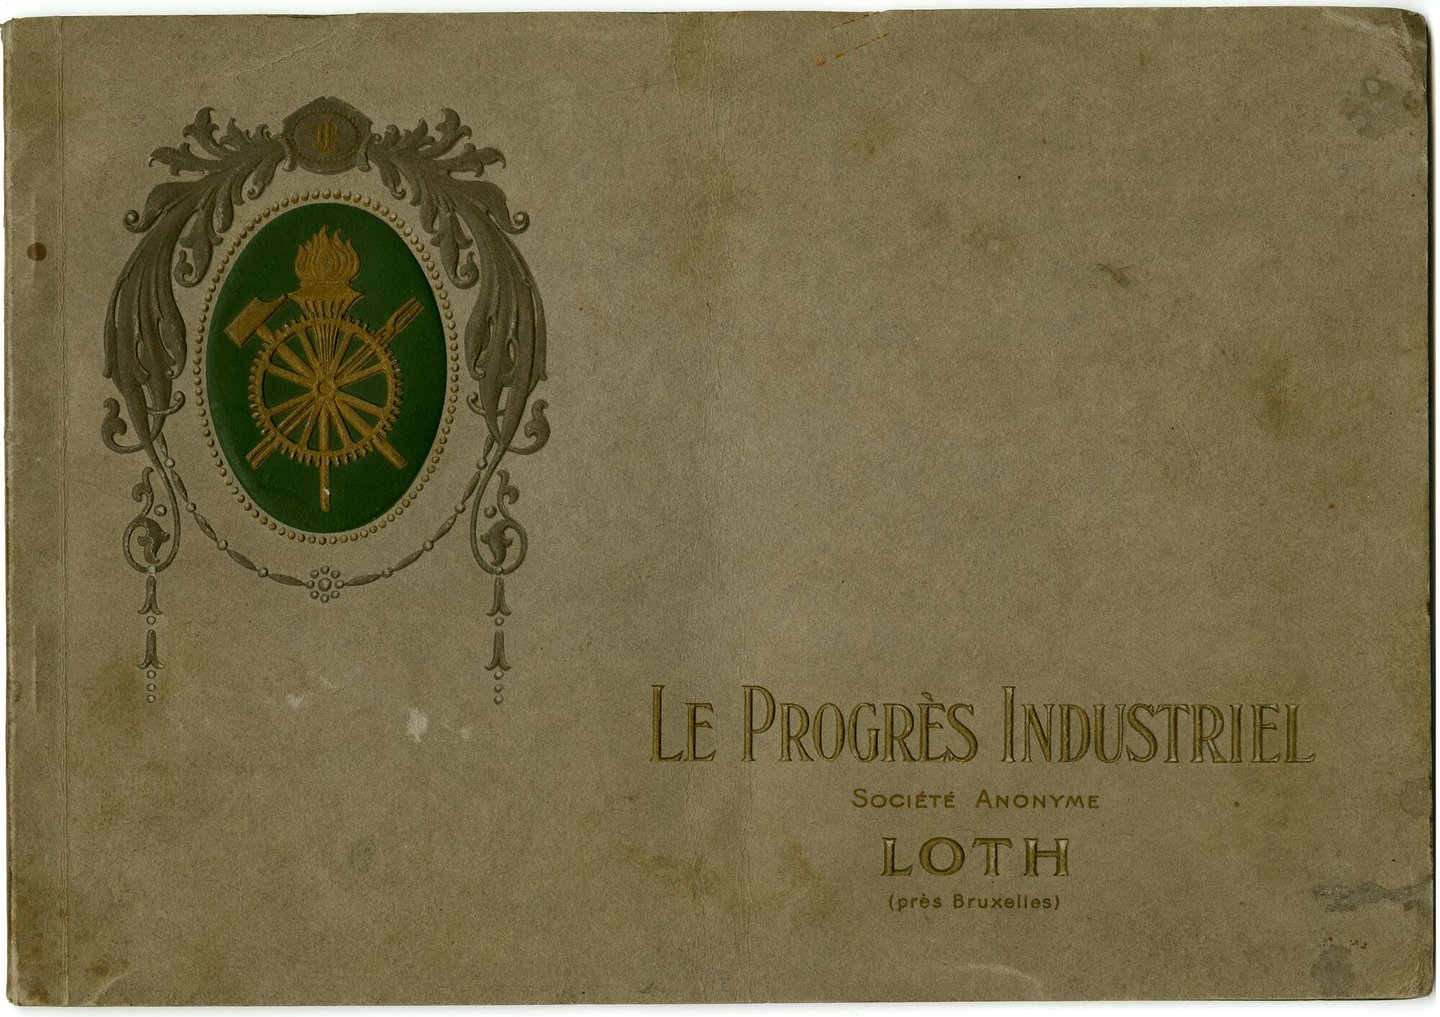 Productbrochure met draaibanken geproduceerd door Le Progrès Industriel in Lot